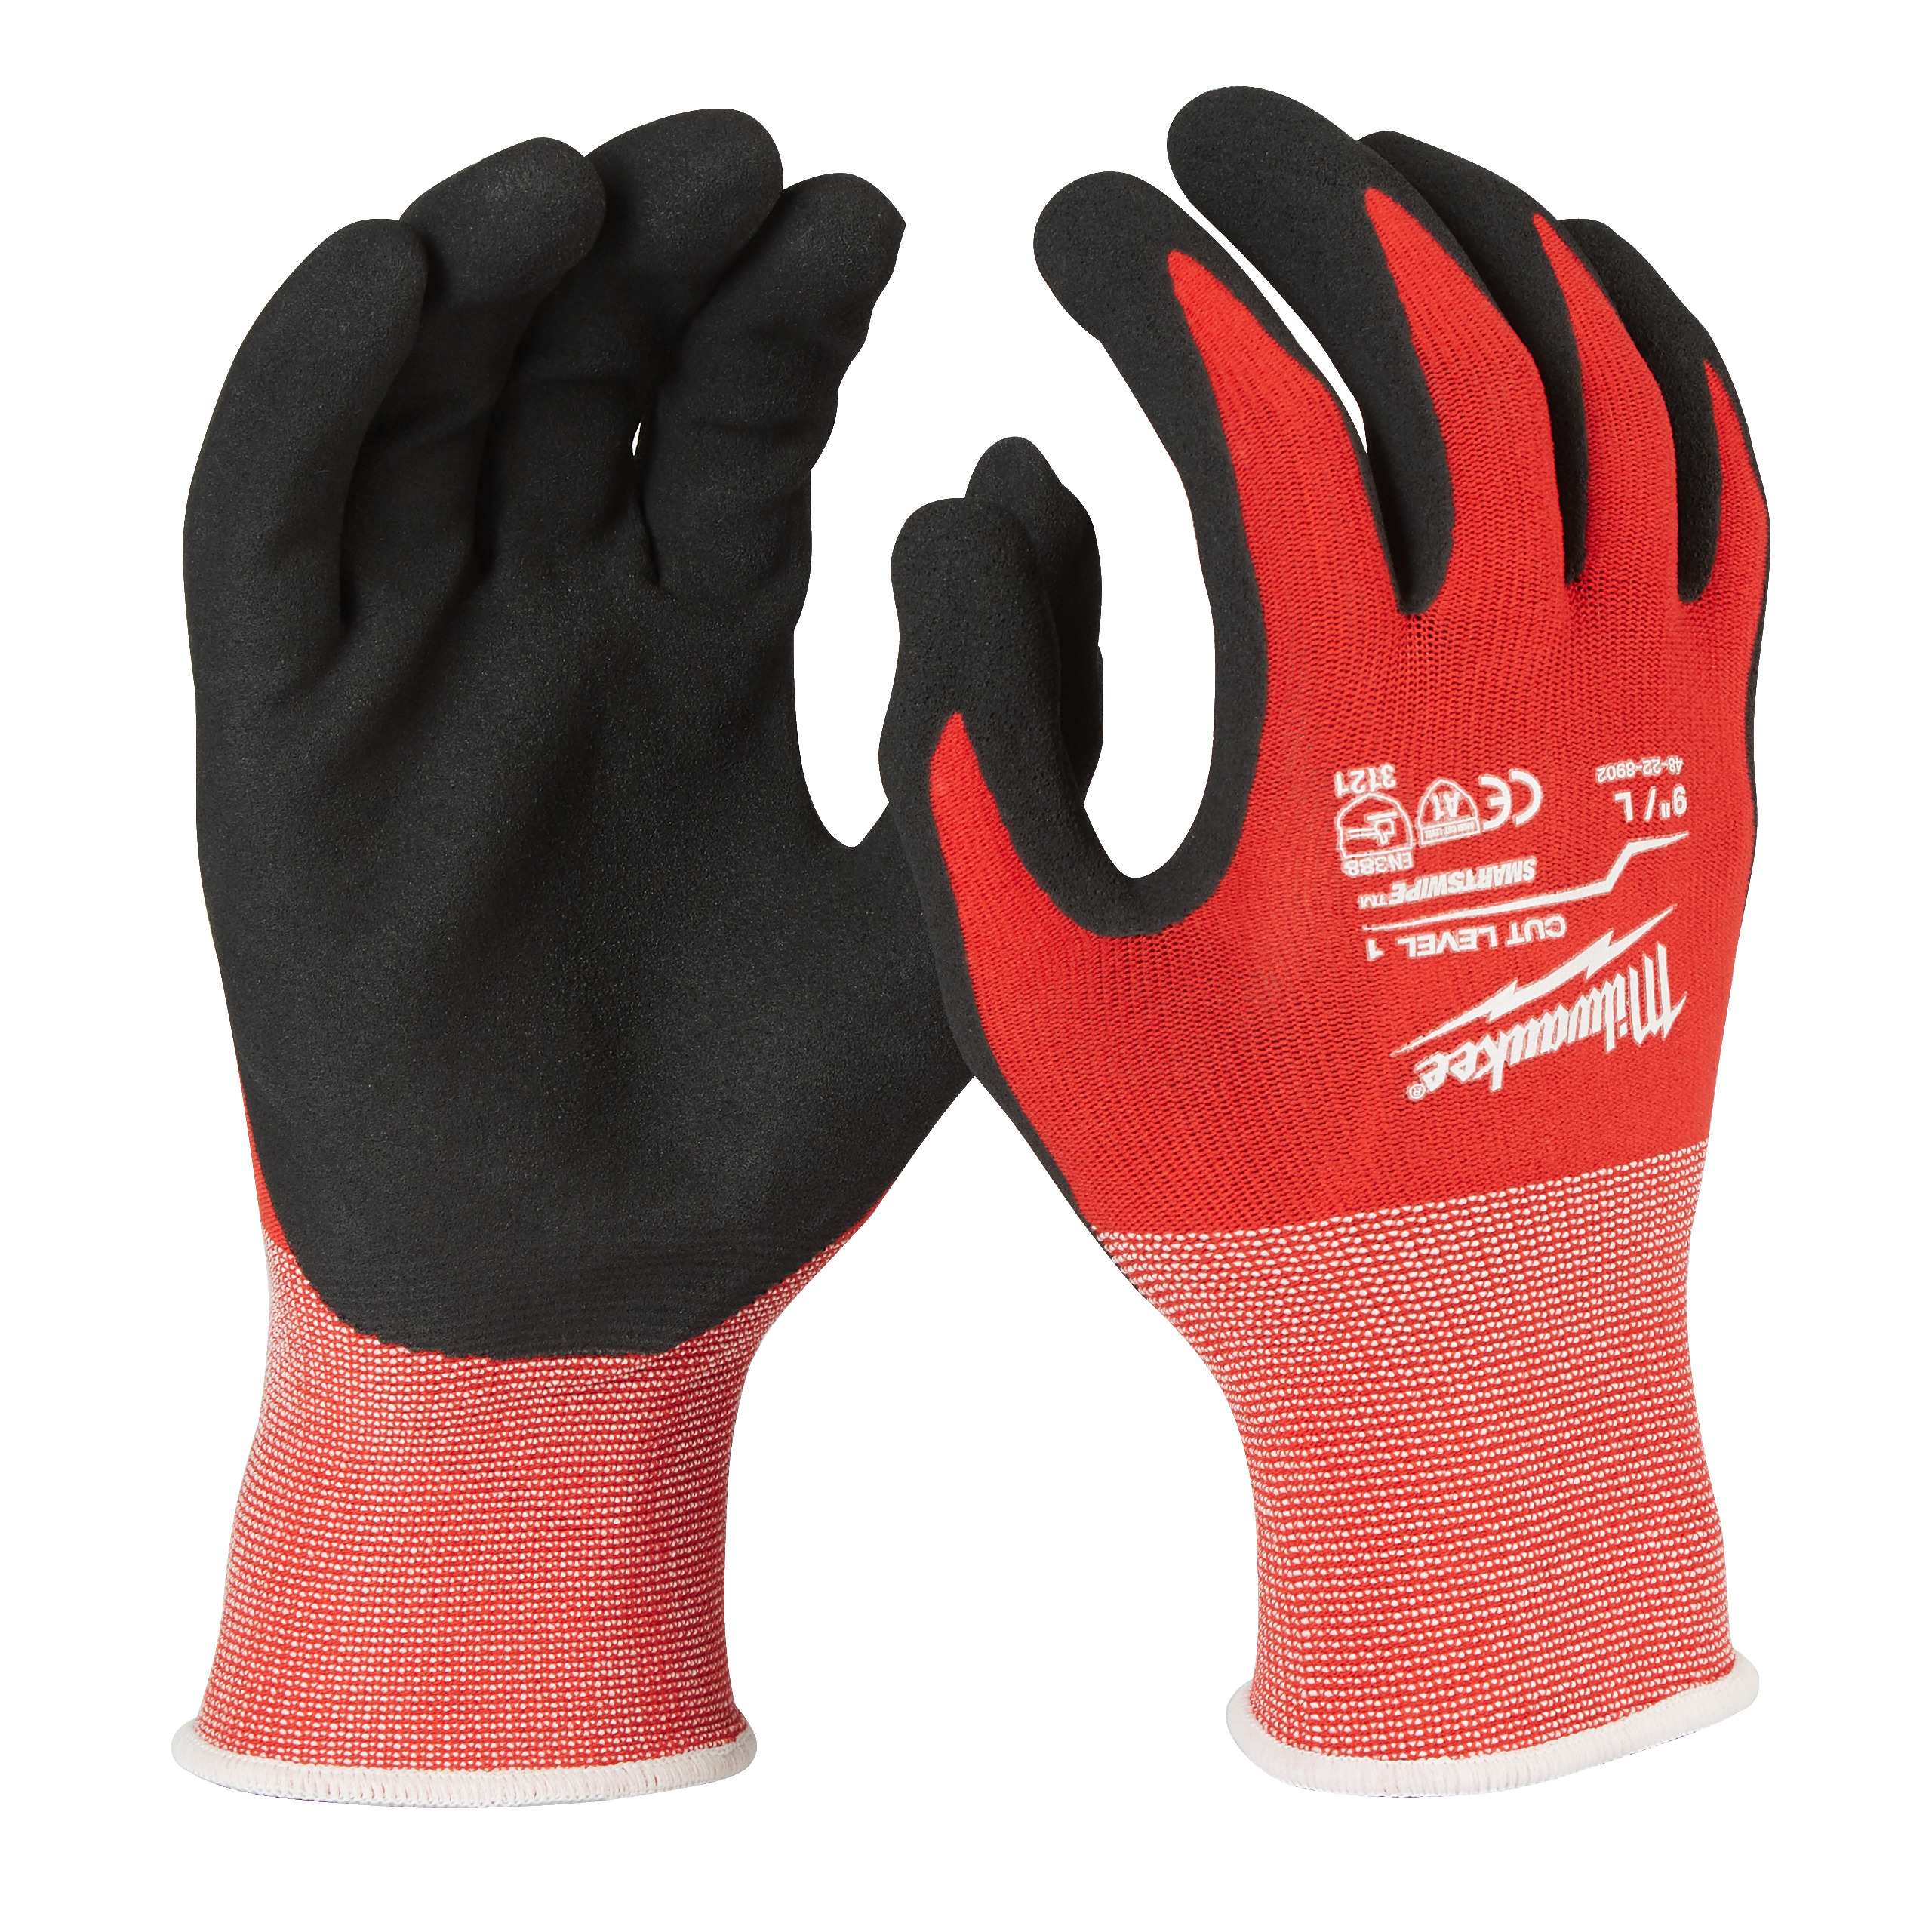 Zimní rukavice odolné proti proříznutí Stupeň 1 -  vel XL/10 - 1ks